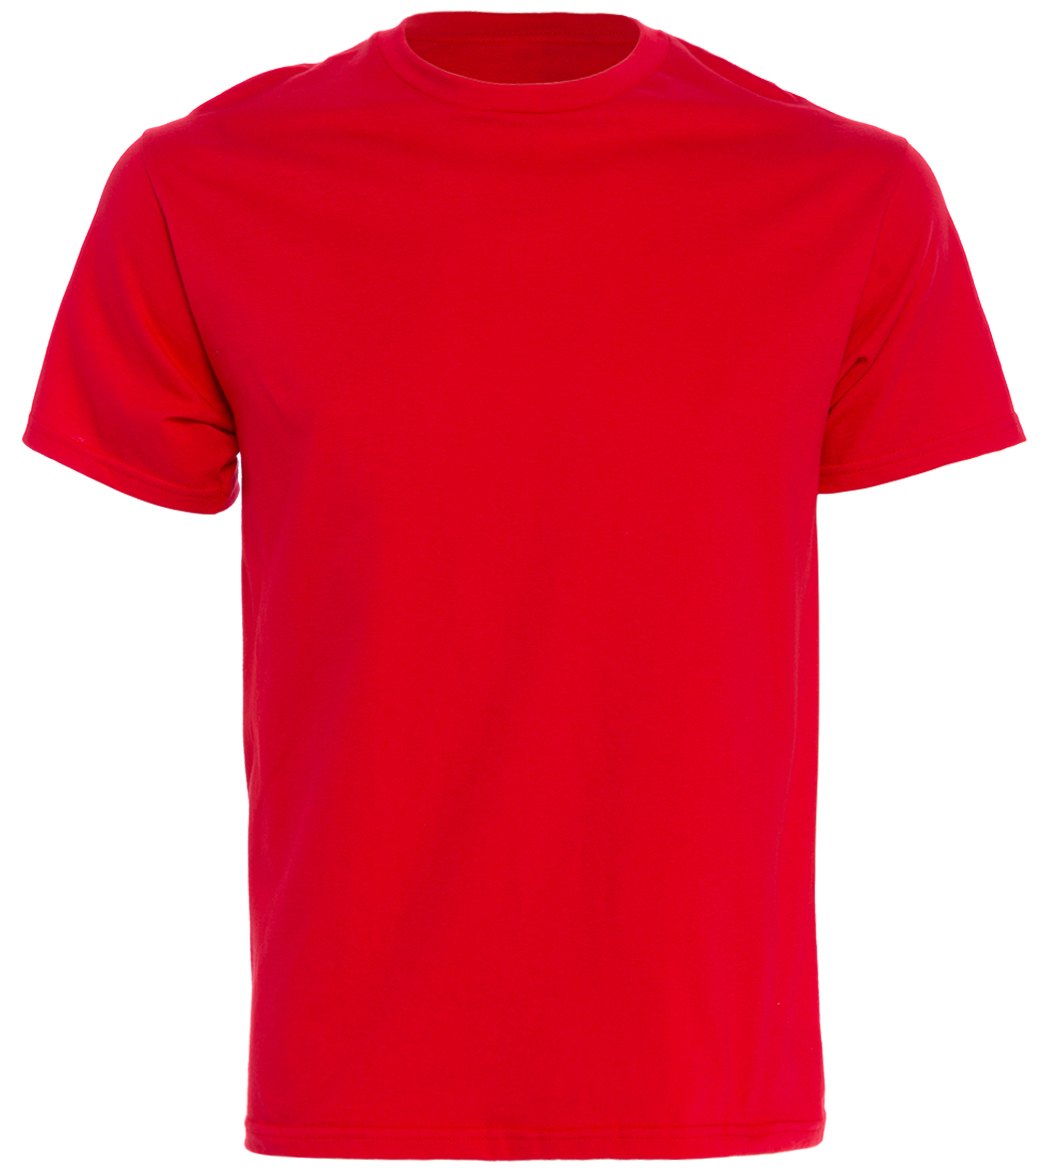 Men's Cotton Short Sleeve T-Shirt - Red Medium - Swimoutlet.com